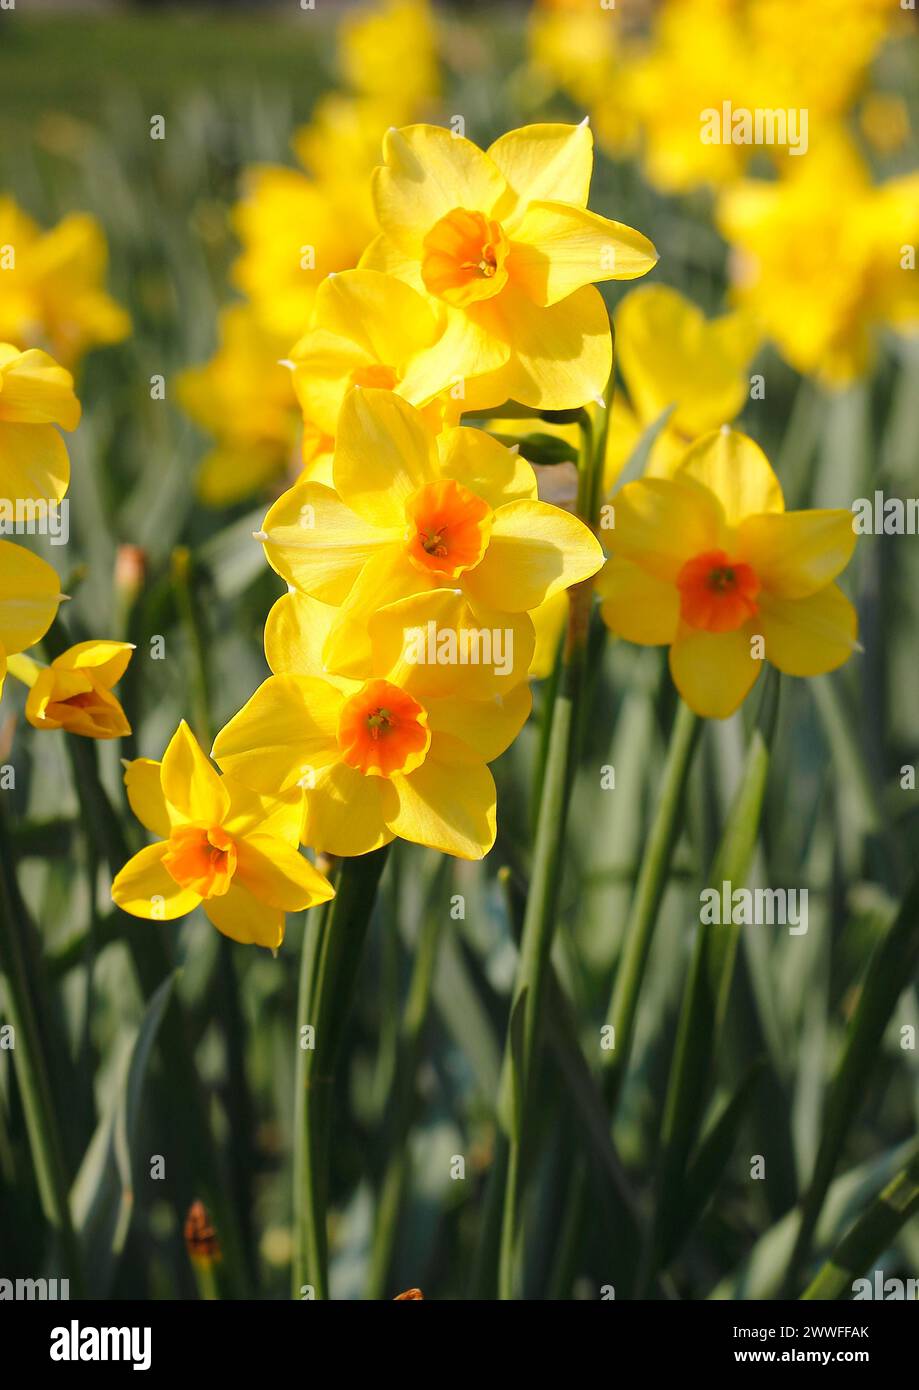 Narcisi giallo-arancio (Narcissus), Renania settentrionale-Vestfalia, Germania Foto Stock